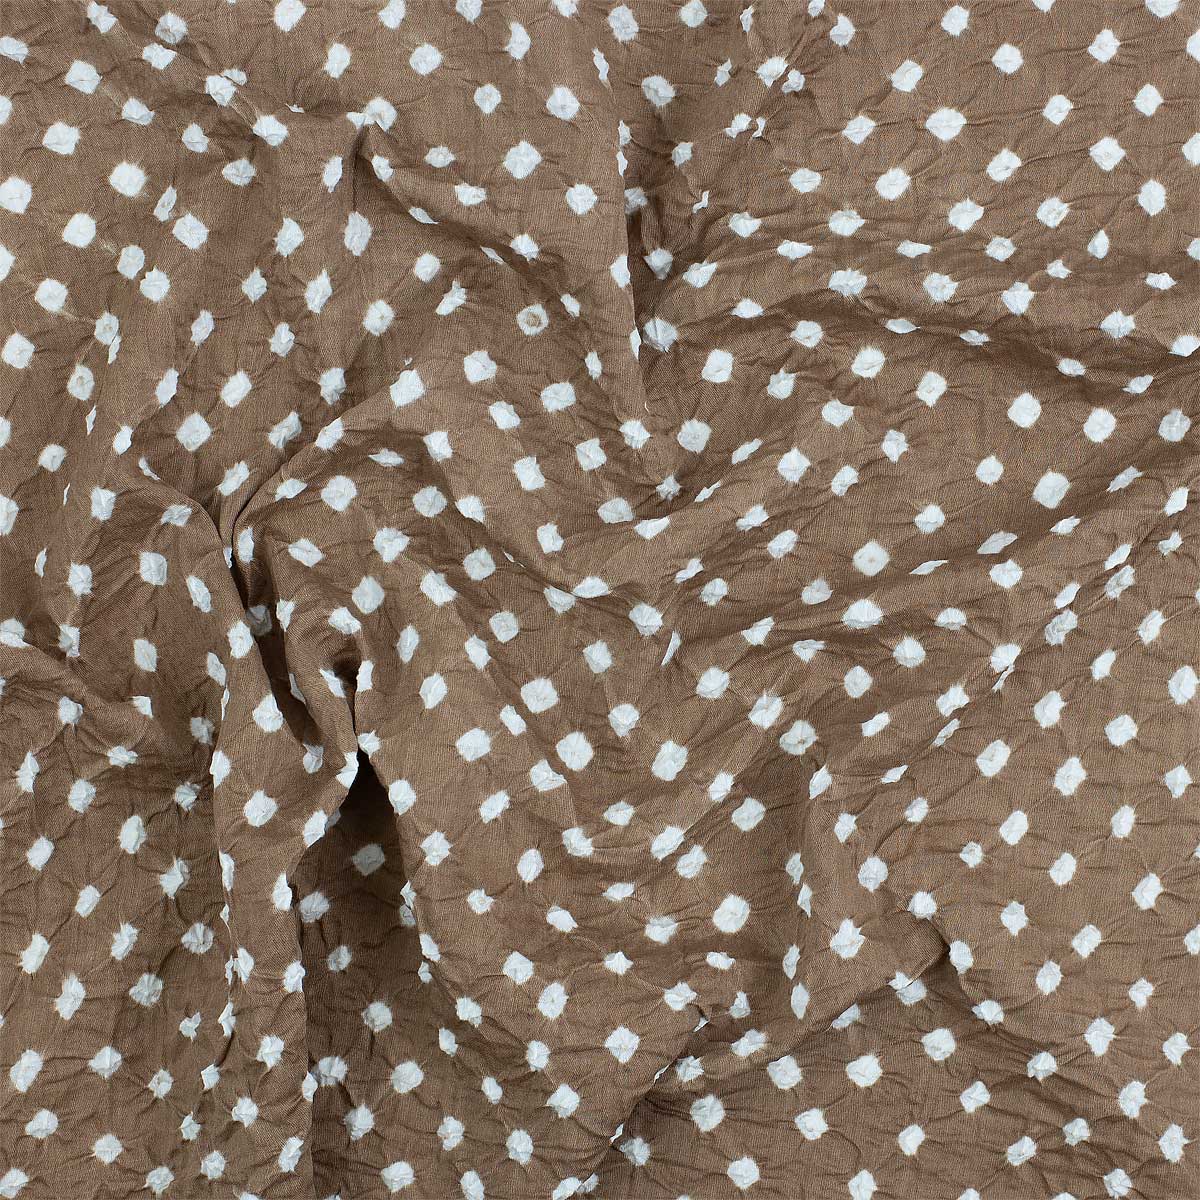 KNOT BATIK Fabric, brown/white